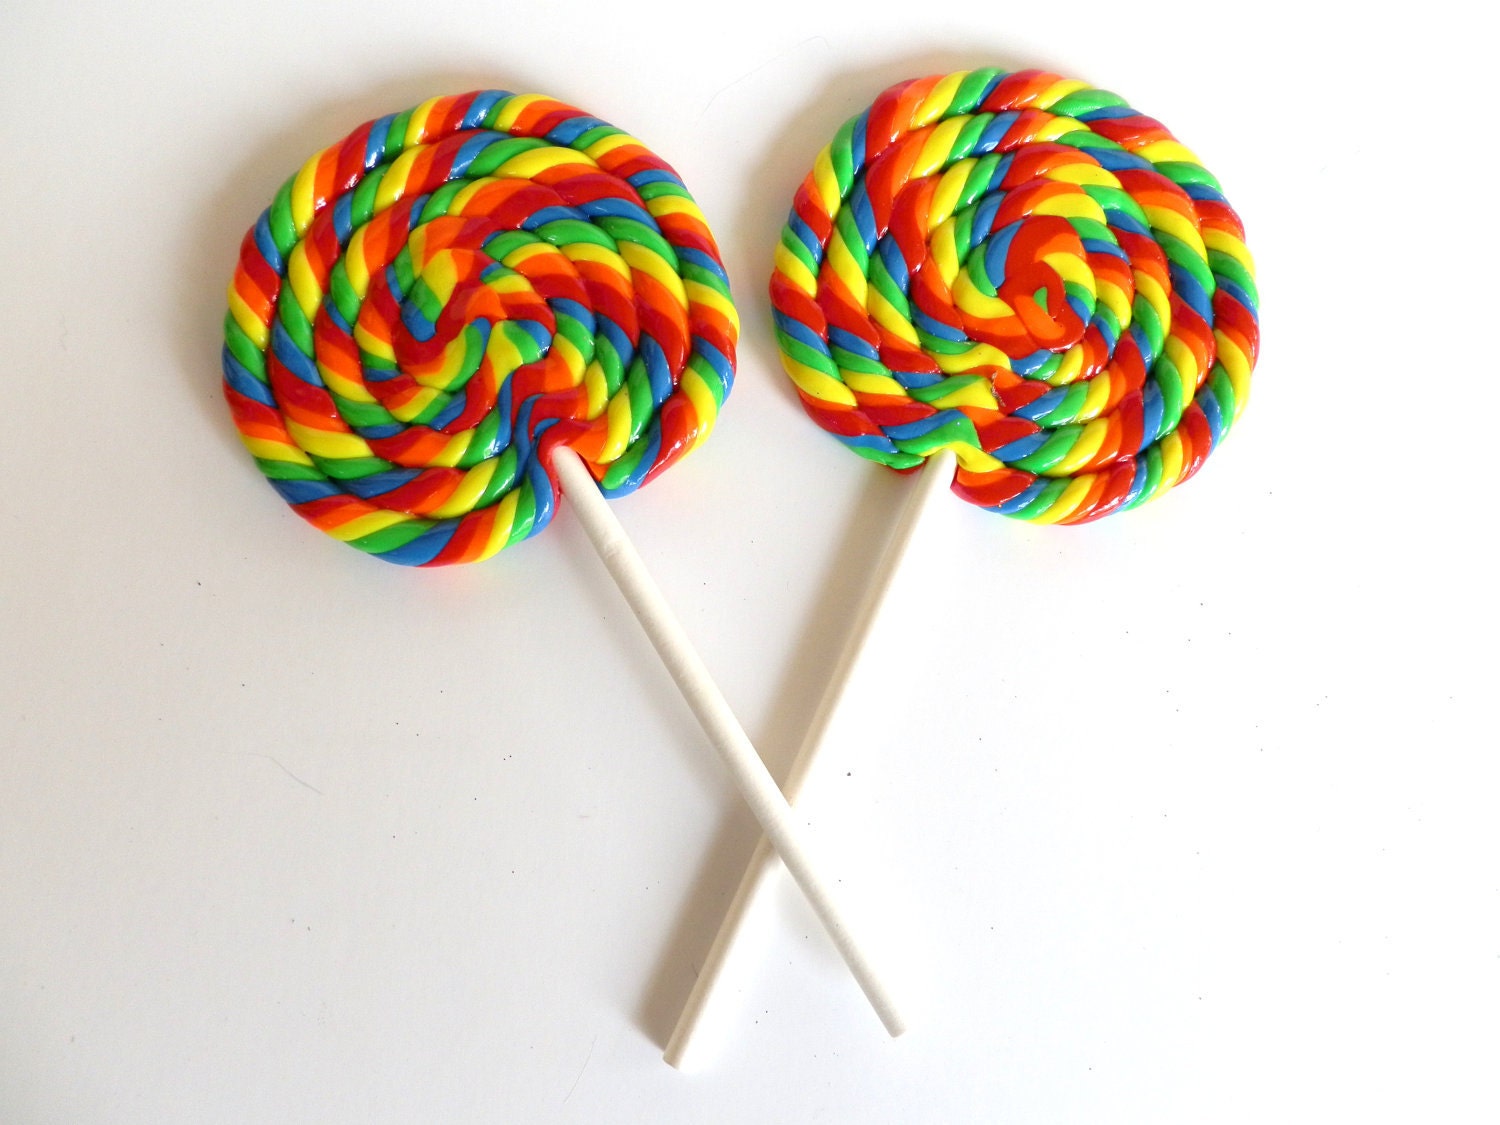 rainbow swirl lollipops bulk